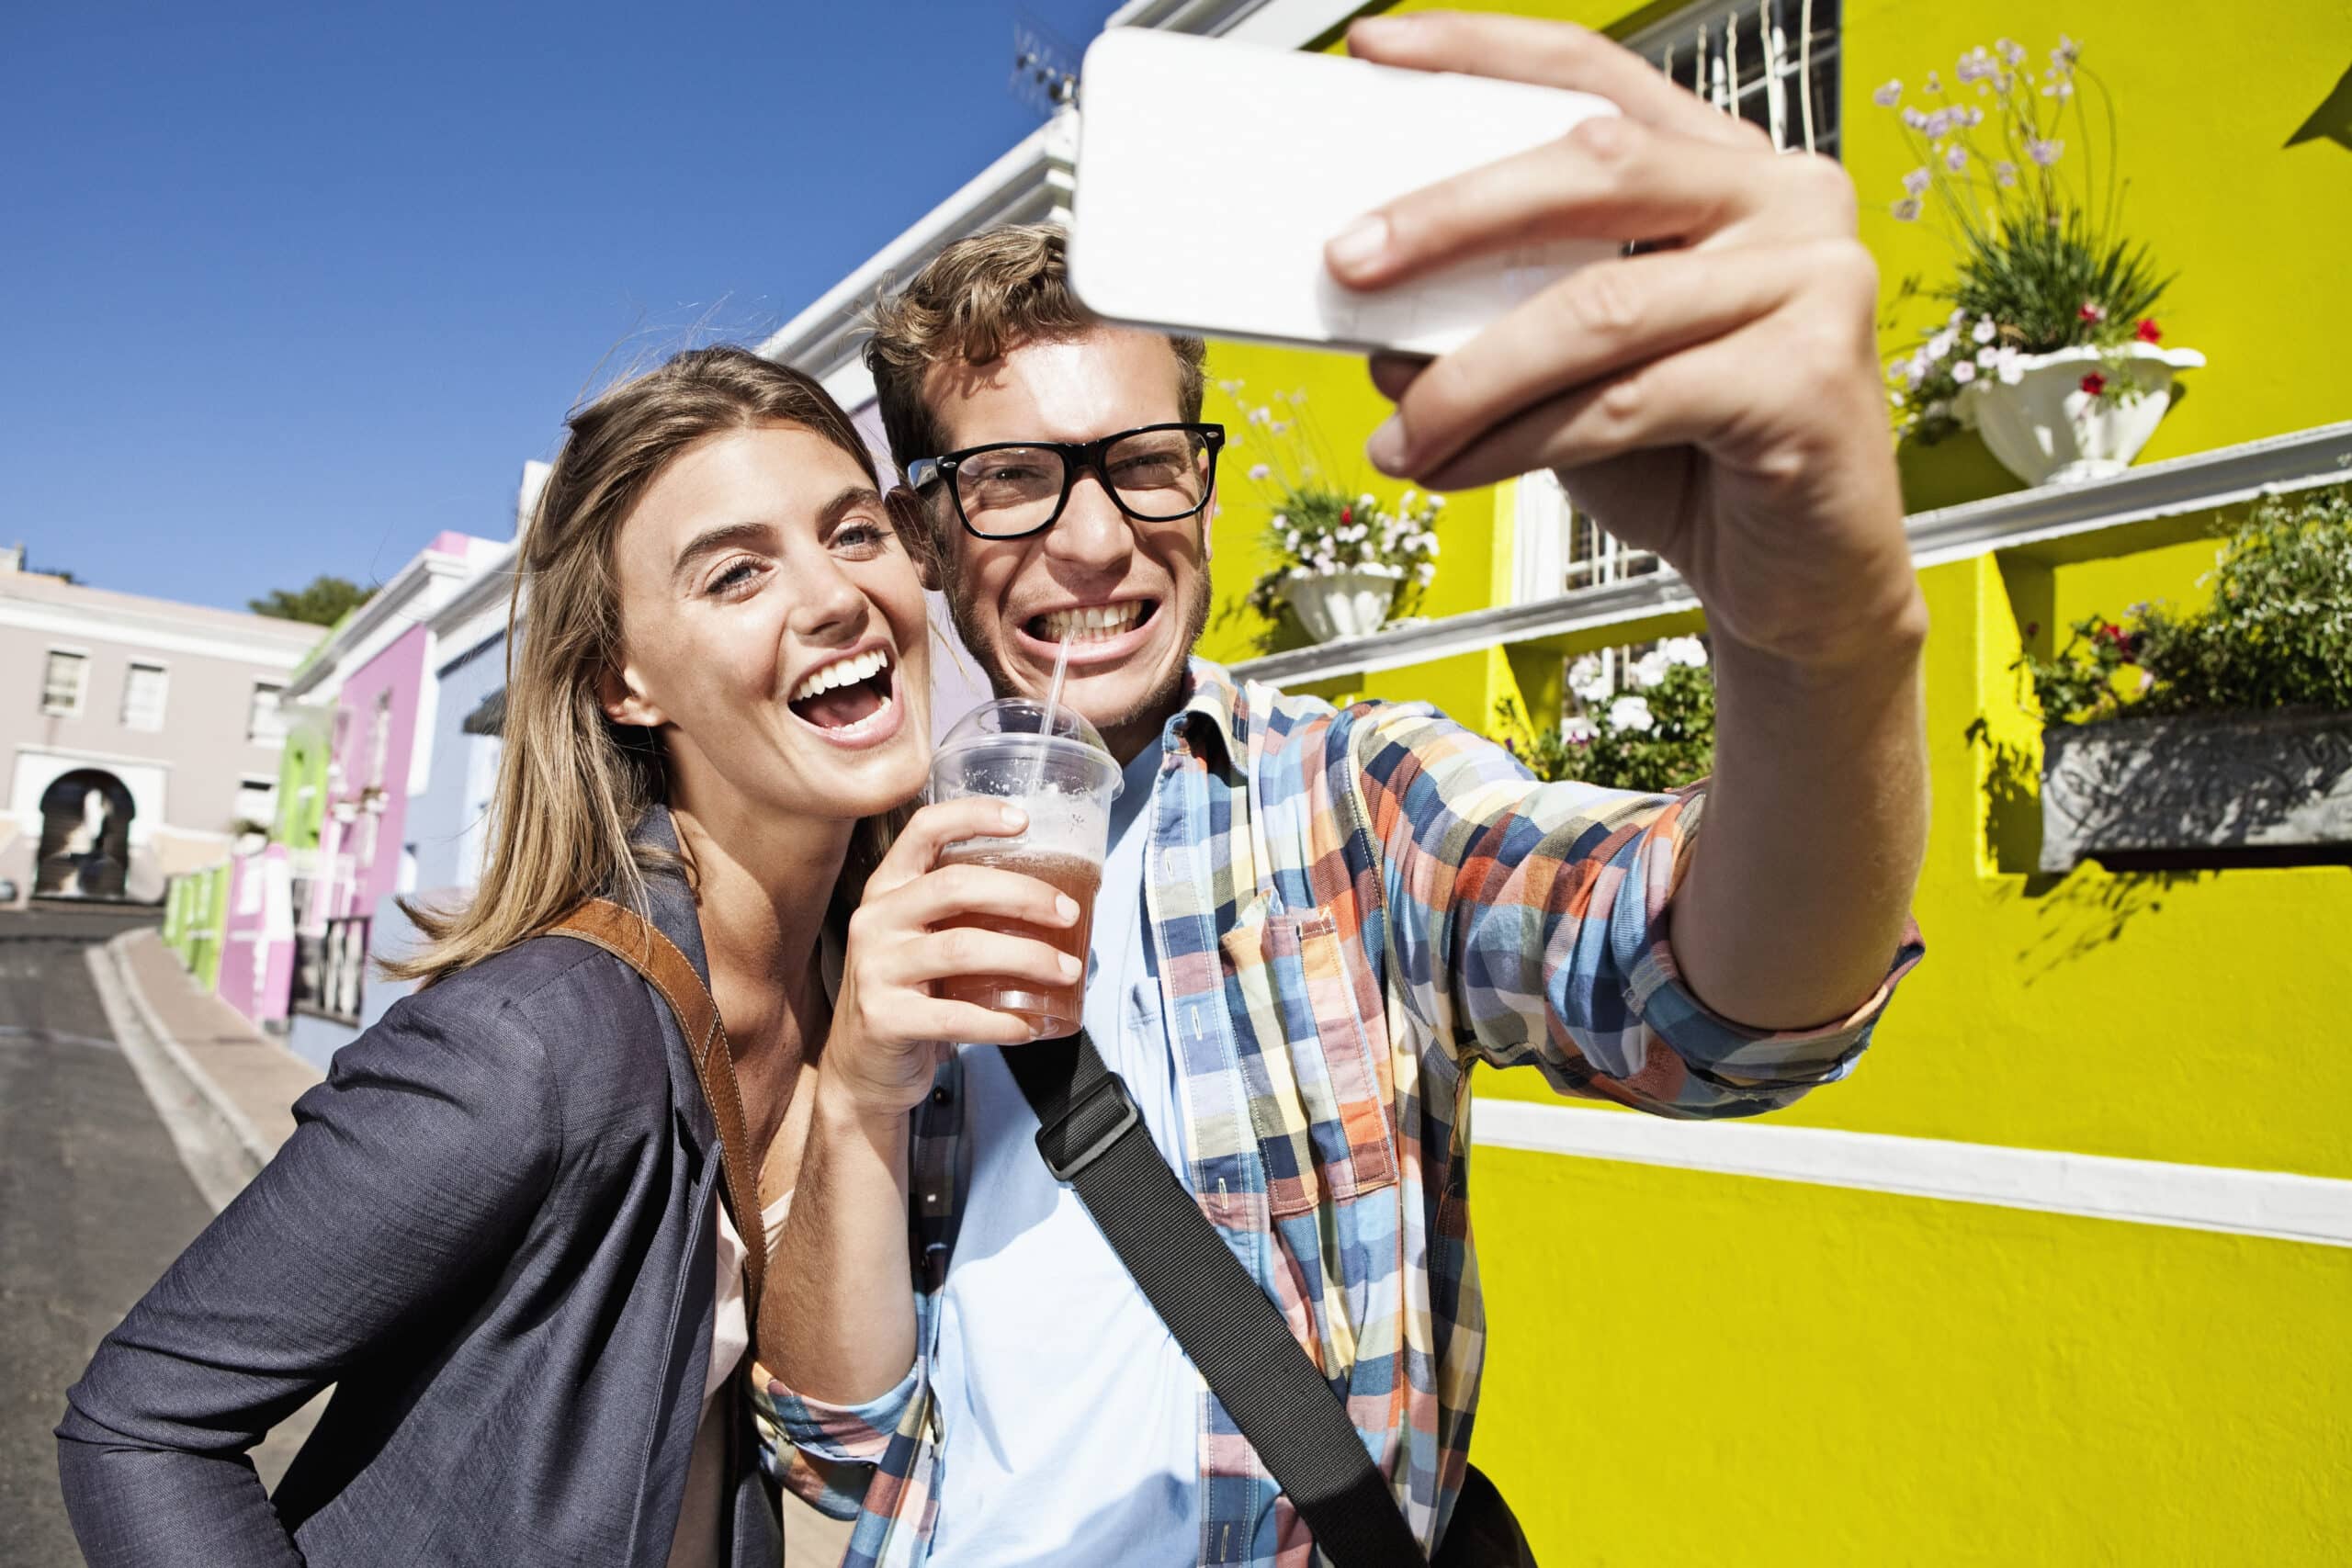 Ein fröhliches junges Paar macht auf einer sonnigen Straße mit bunten Gebäuden im Hintergrund ein Selfie mit einem Smartphone. Die Frau hält ein Getränk in der Hand und lehnt sich nah an den Mann heran, der eine Brille trägt. © Fotografie Tomas Rodriguez